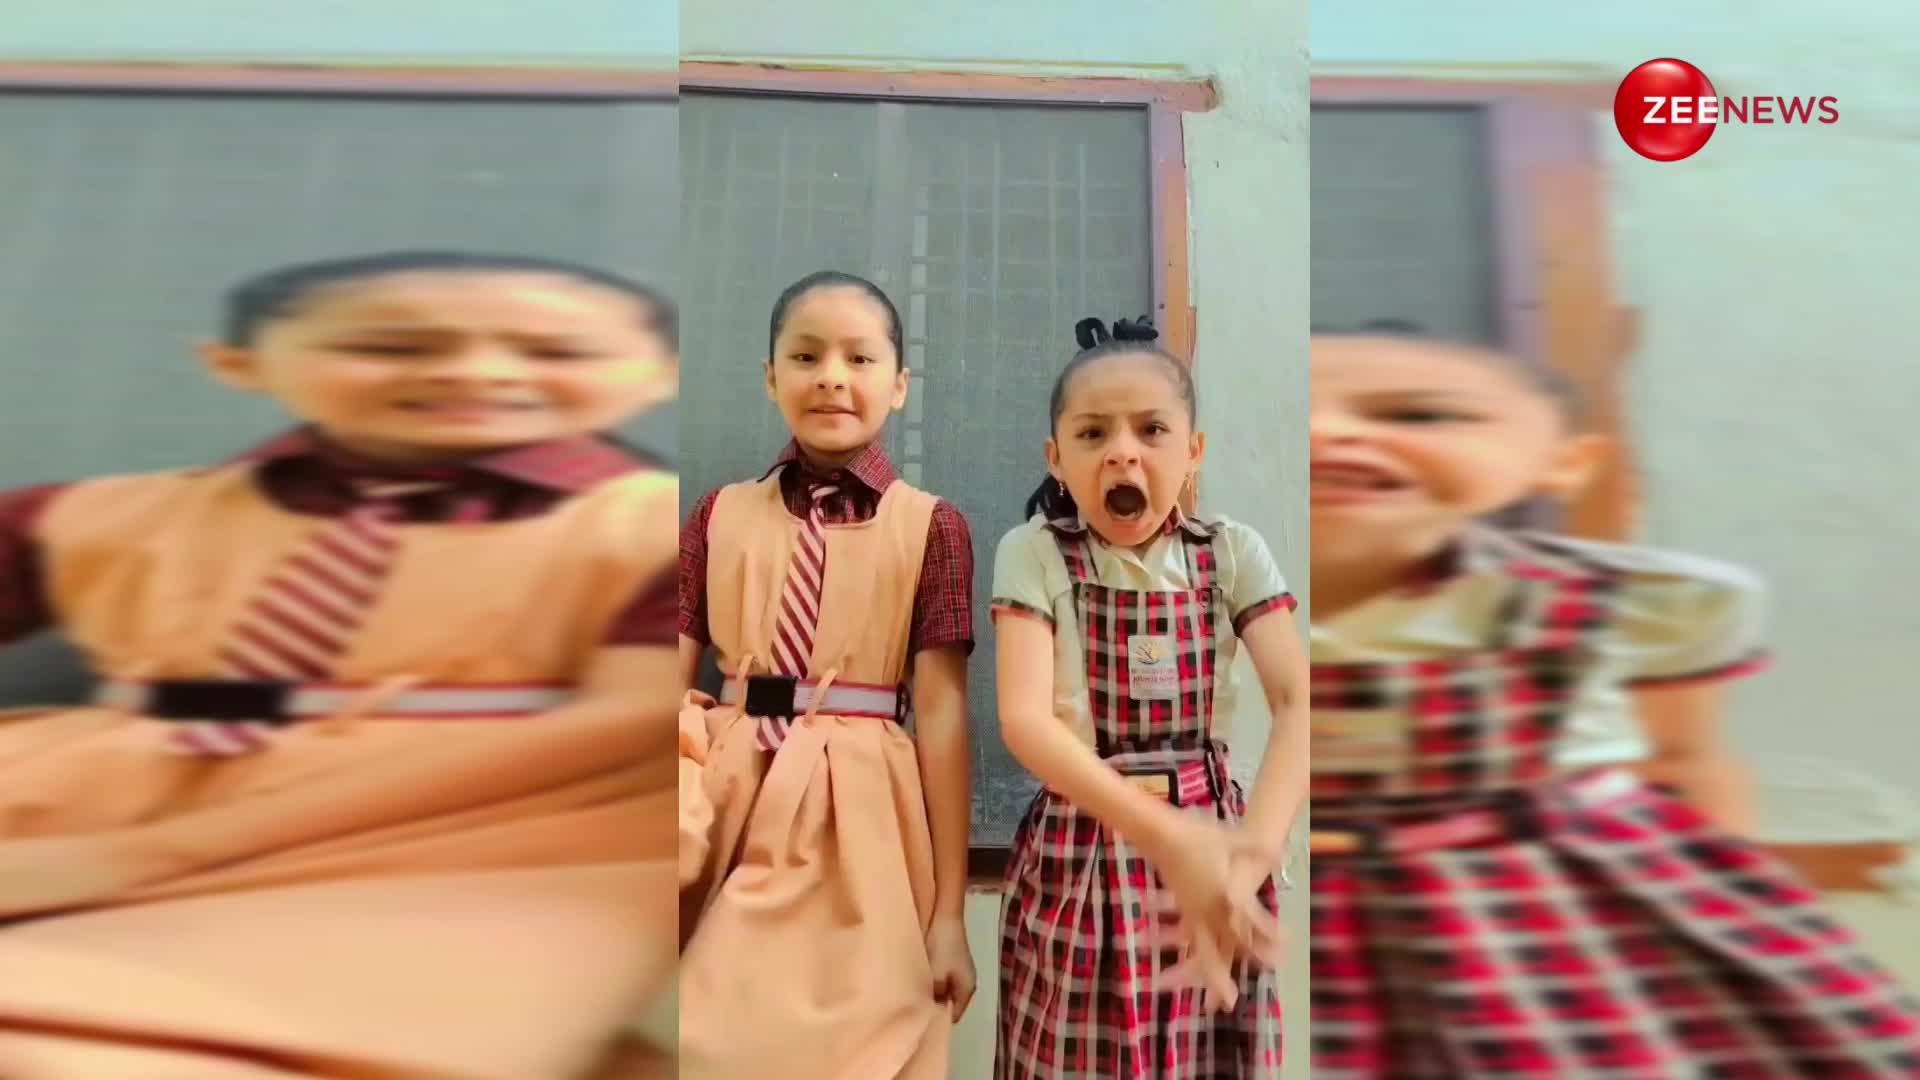 9 साल की नटखट बच्चियों ने पुराने गाने पर स्कूल ड्रेस पहन की ऐसी कॉमेडी, देख लोट-पोट हुए लोग